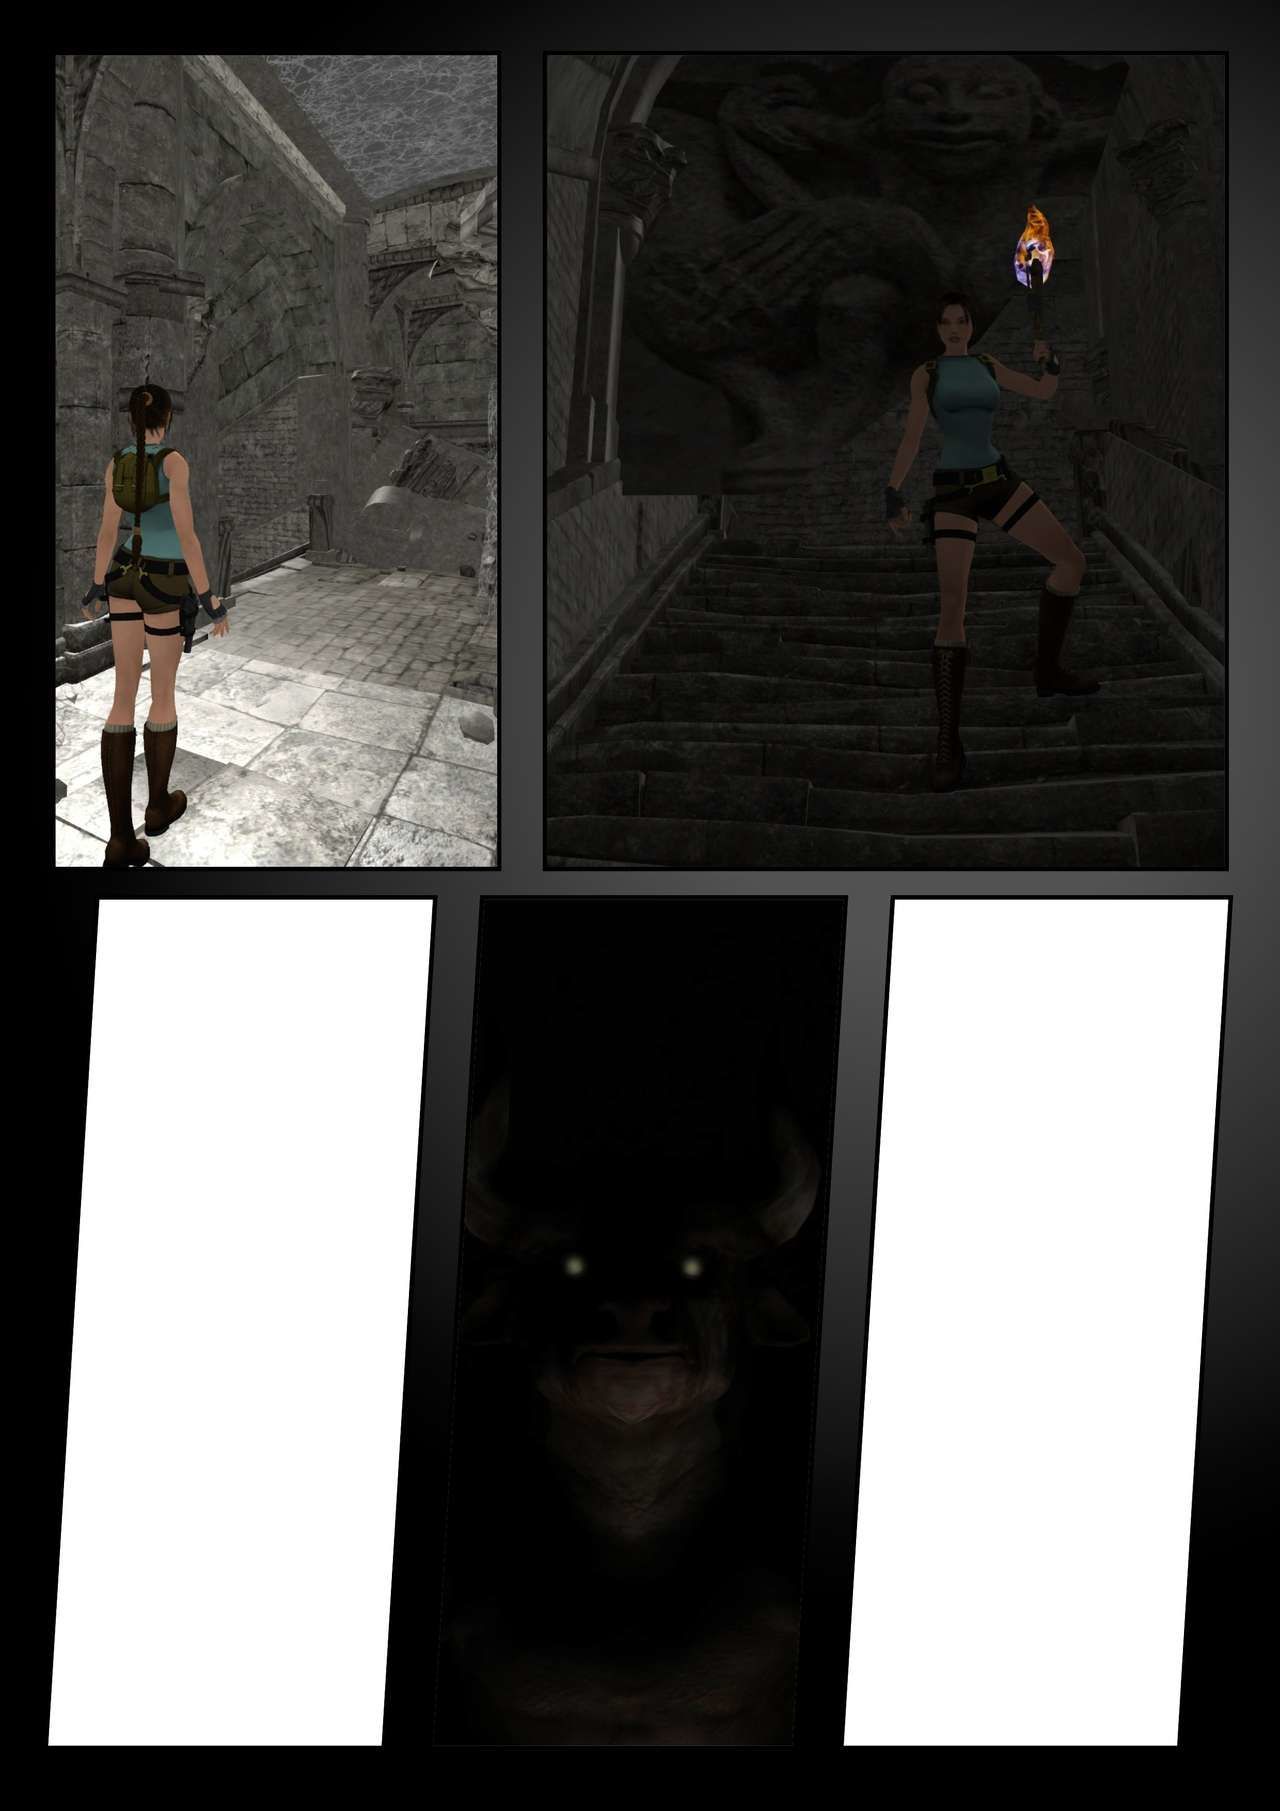 Lara Croft vs die minotaurus Wip